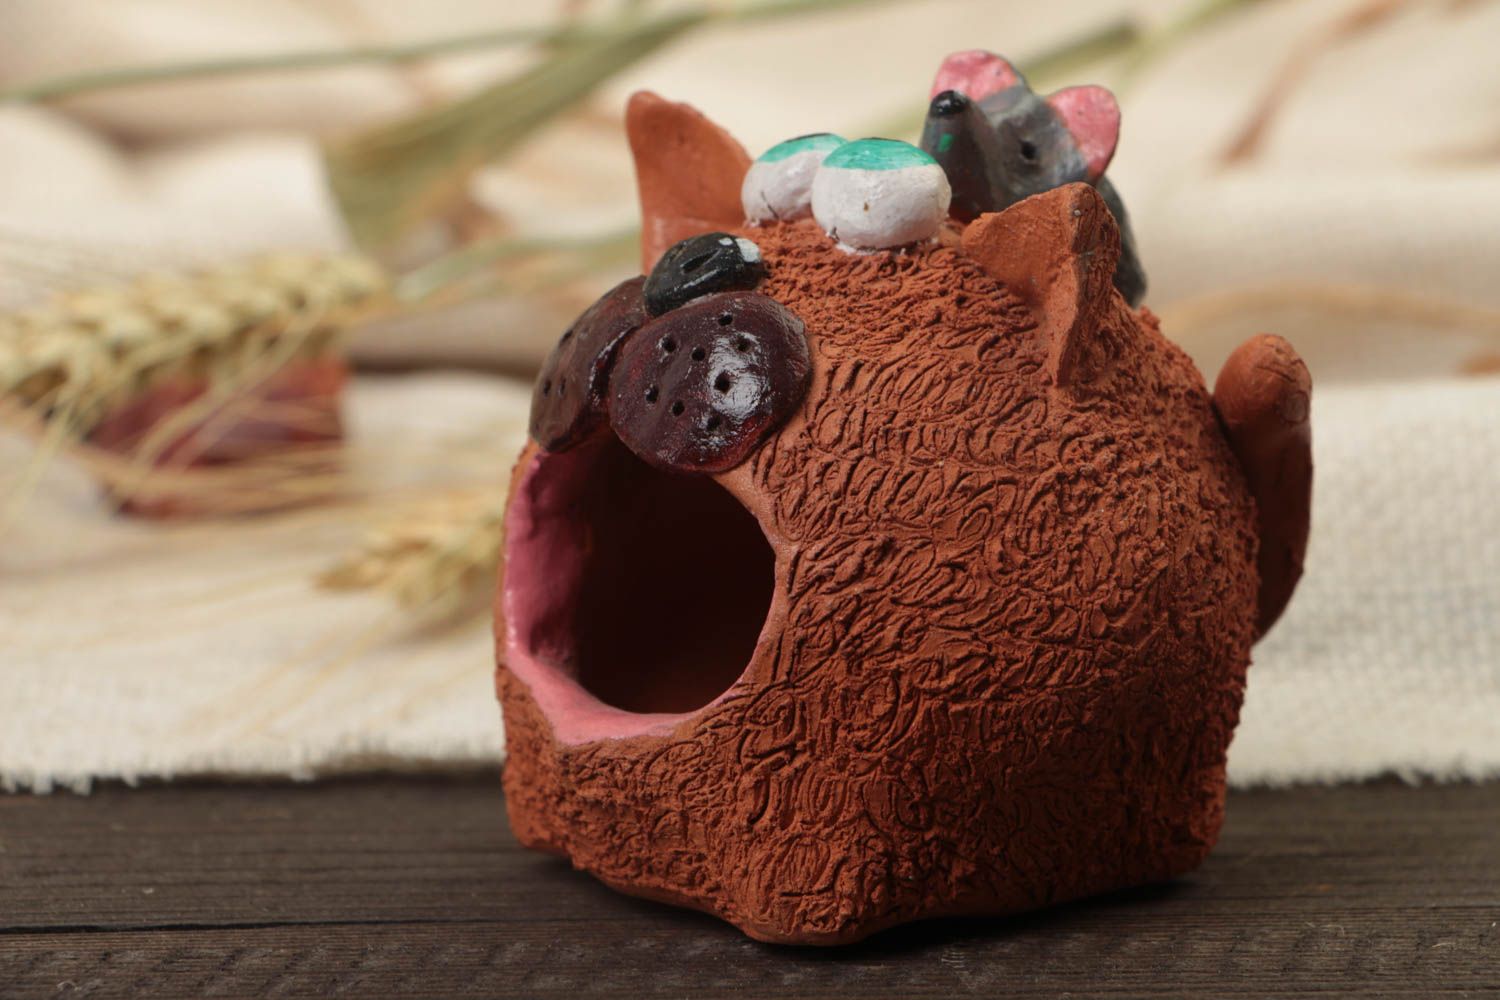 Керамическая фигурка кота ручной работы из глины расписанная красками забавная фото 1